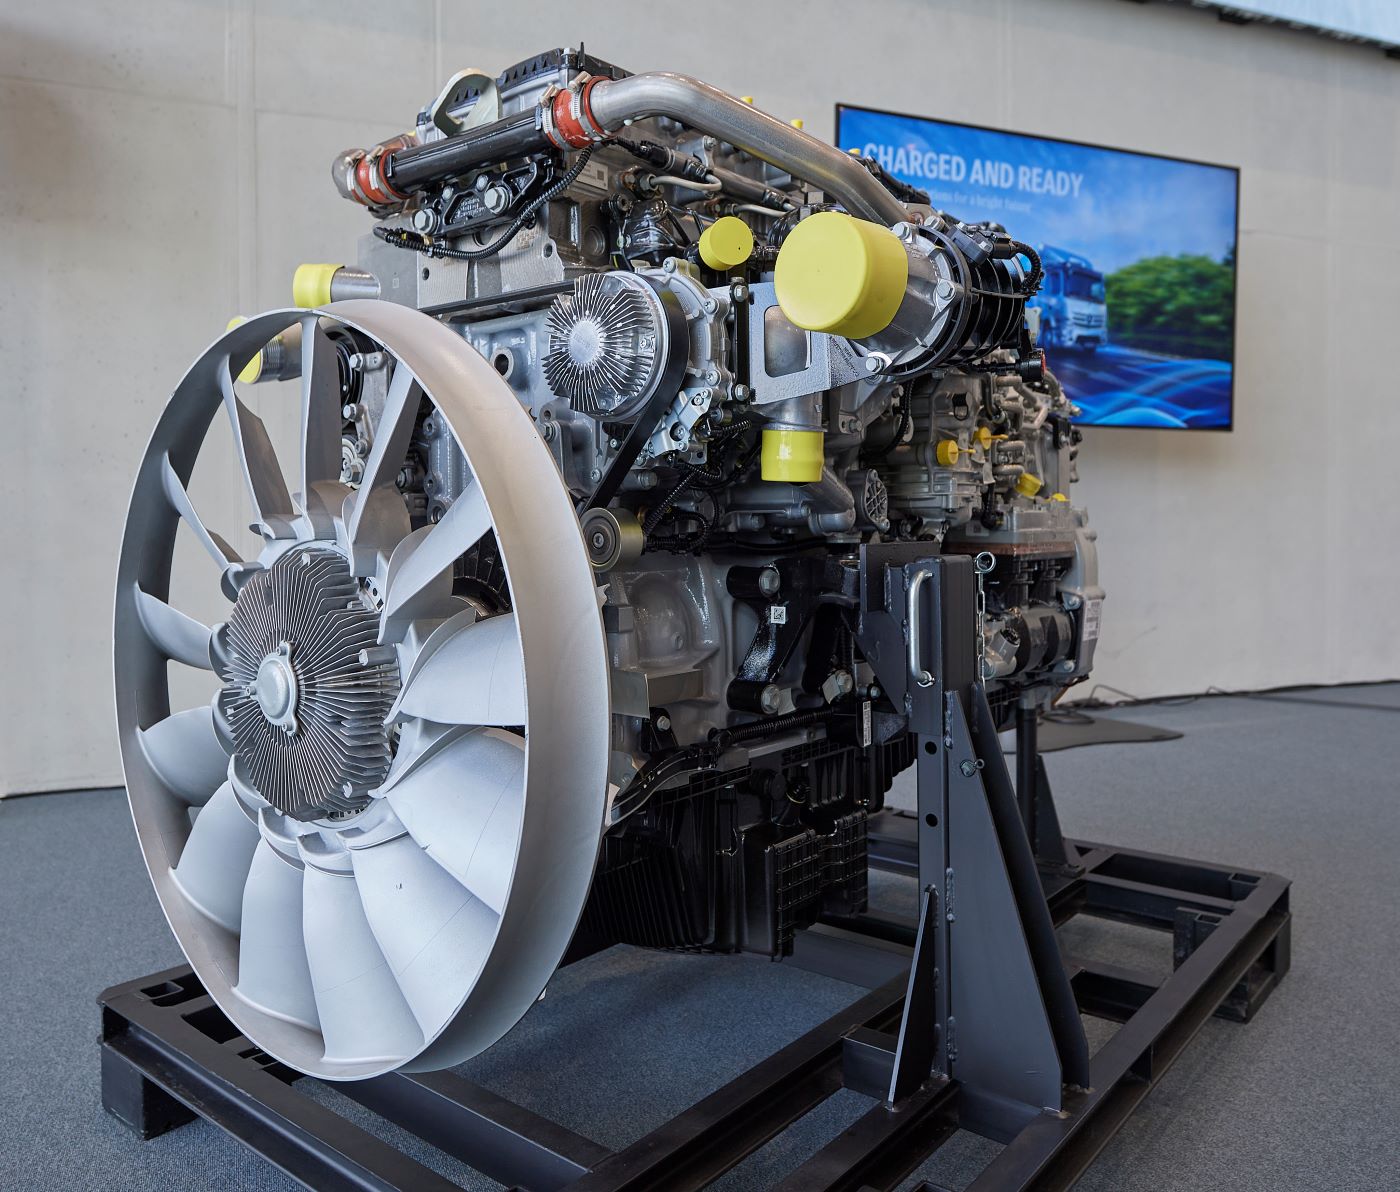 El motor diésel OM 471 de 12,8 litros y seis cilindros llega a su tercera generación y entrega hasta 530 CV. Equipa la nueva generación del Mercedes Benz Actros L.